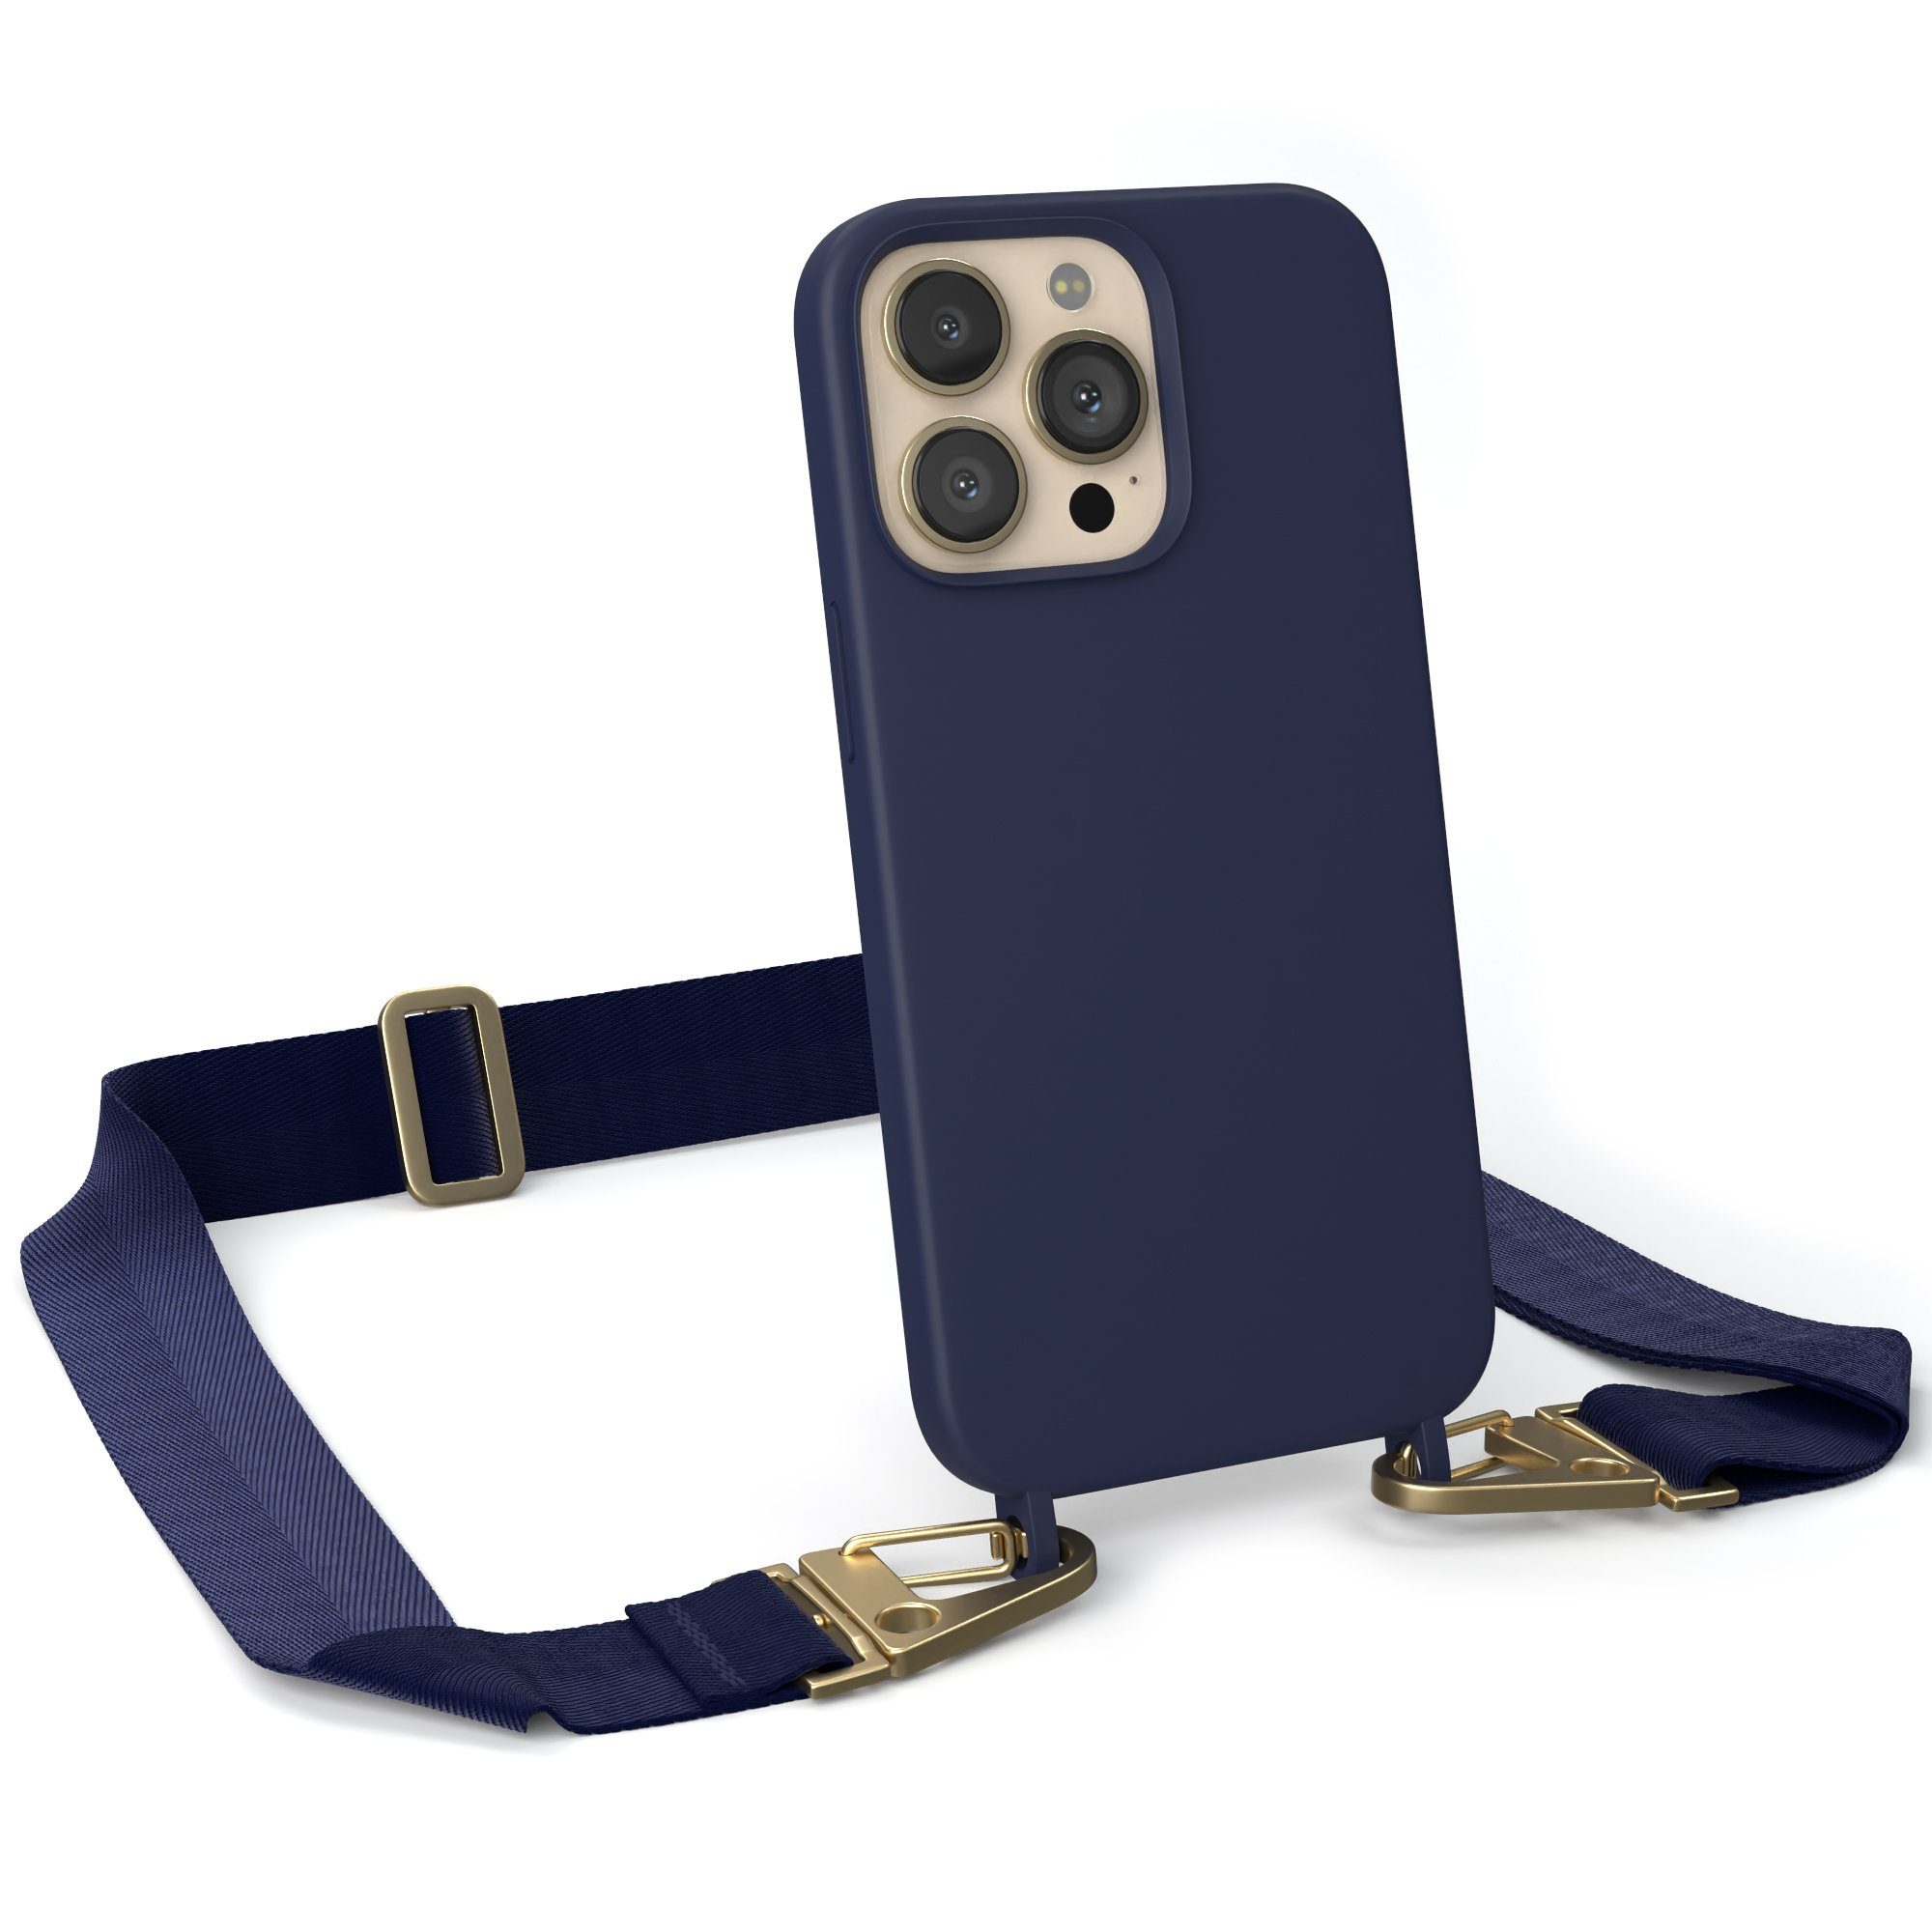 EAZY CASE Handykette Karabiner Breitband für Apple iPhone 13 Pro 6,1 Zoll, Handykette zum Umhängen Slim Phone Chain Festivalbag Smartphone Blau